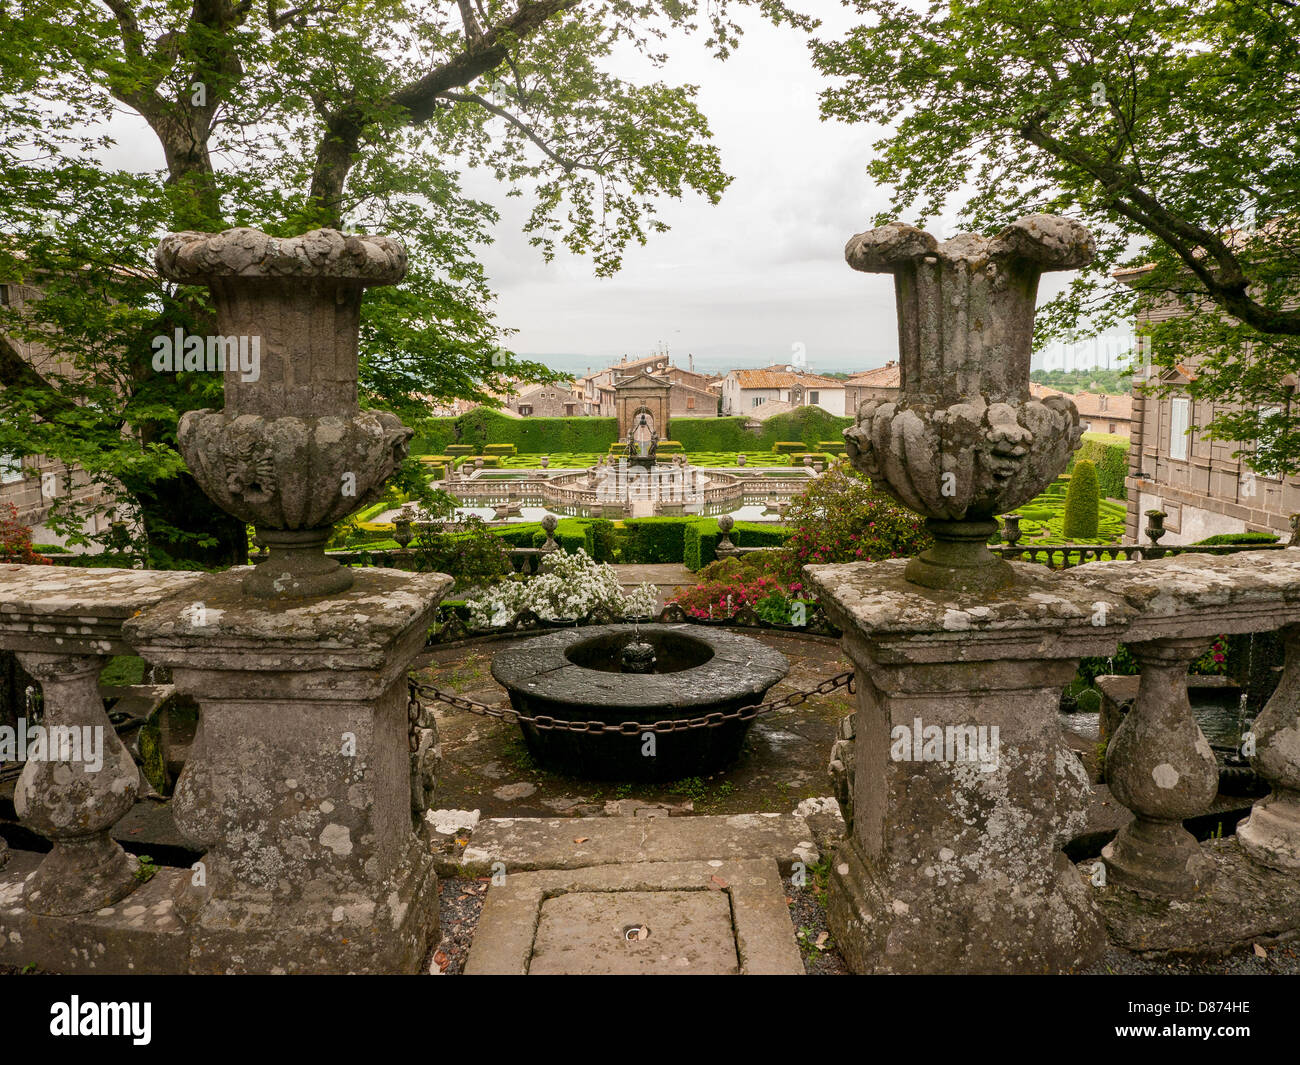 The enchanting gardens of Villa Lante in Bagnaia, Umbria, Italy Stock Photo